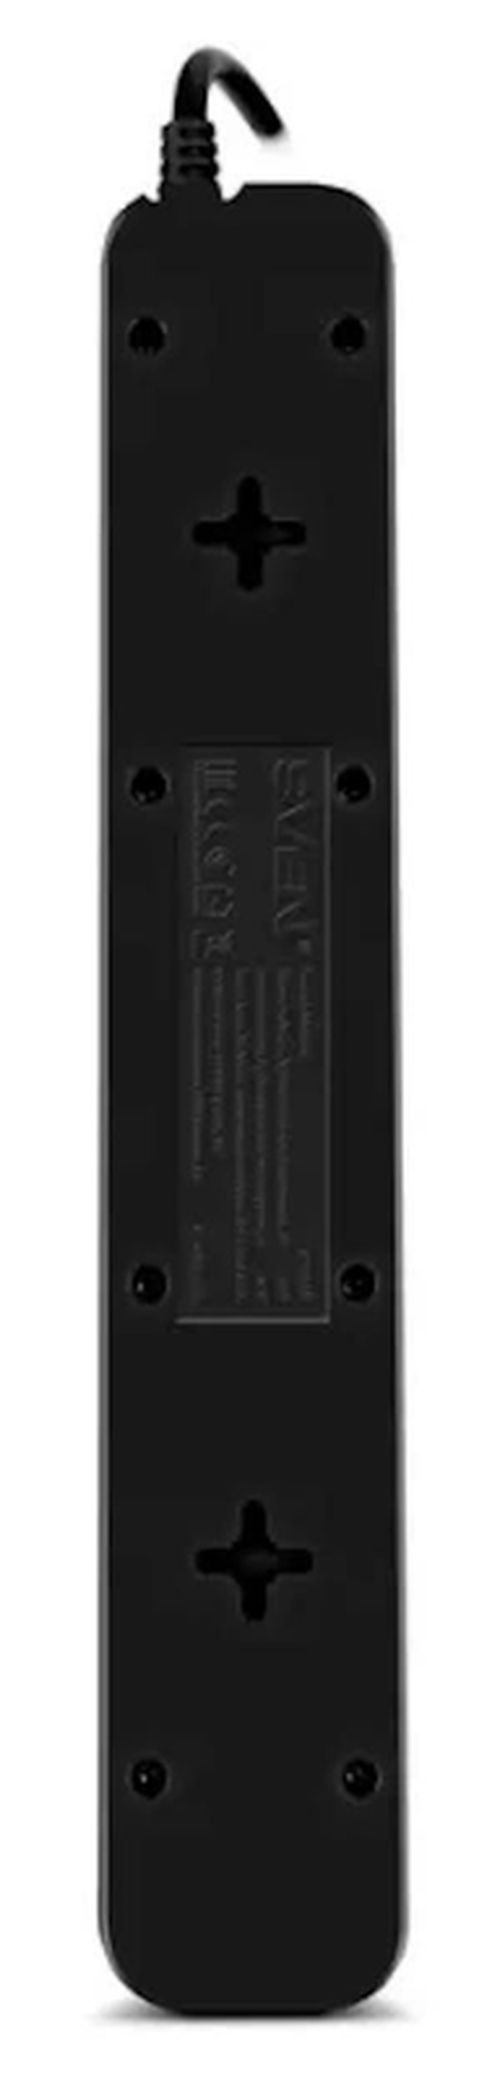 купить Фильтр электрический Sven SF-05LU, 5 Sockets + 2 USB (2,4 A), 3.0m, Black в Кишинёве 